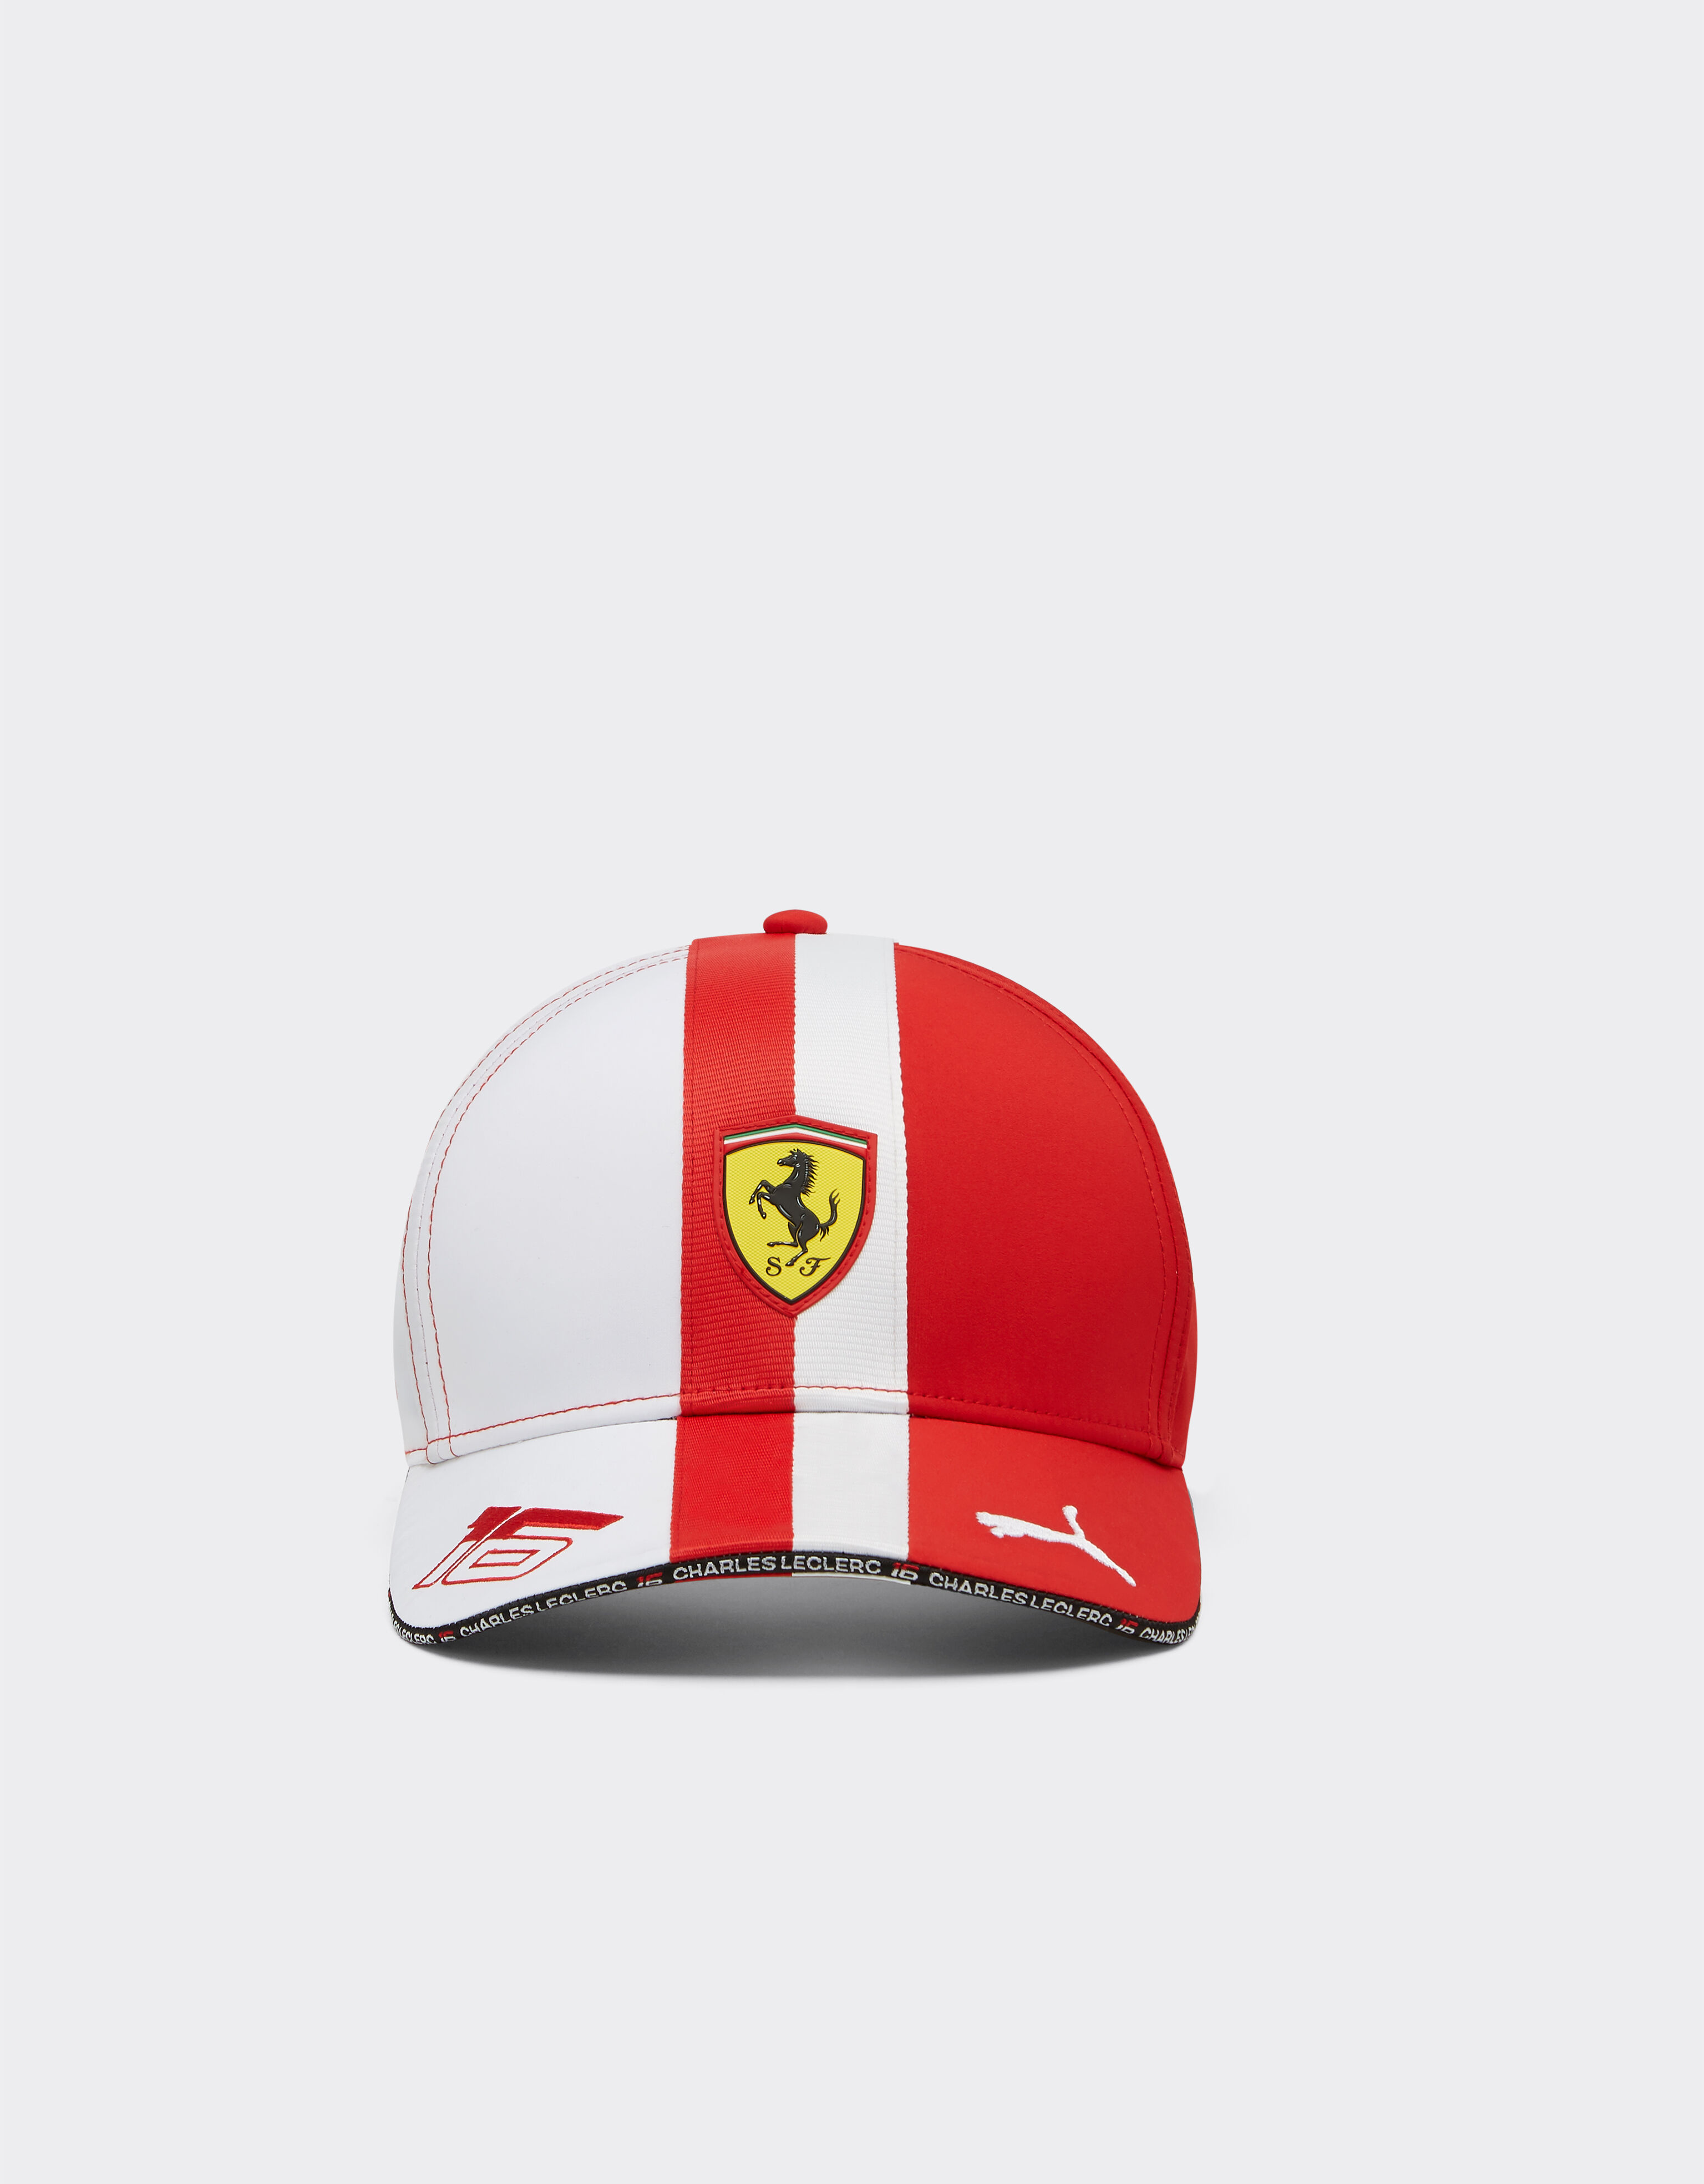 Ferrari Puma for Scuderia Ferrari Leclerc hat - Monaco Special Edition Red F1348f